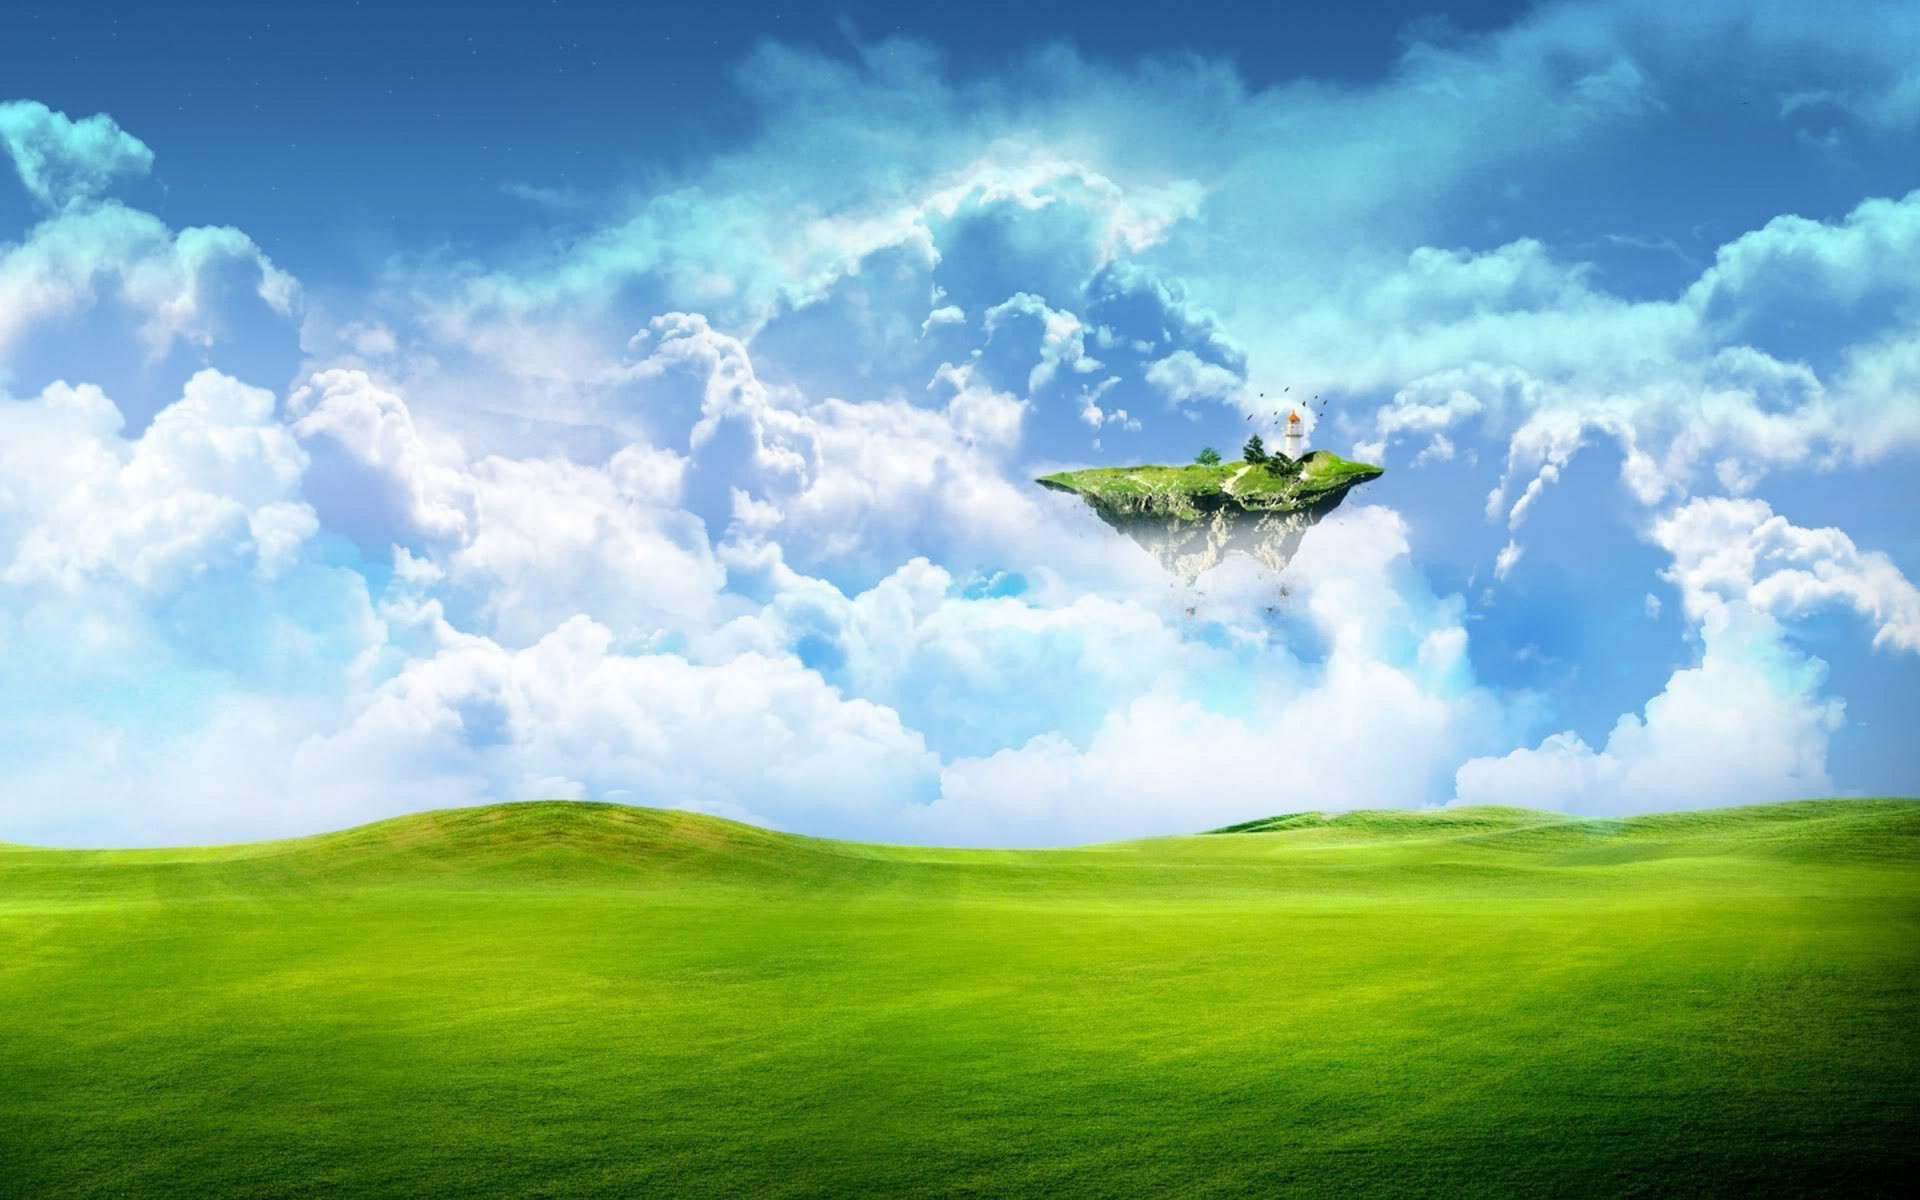 The Grassland Landscape Design Wallpaper Desktop Background Scenery